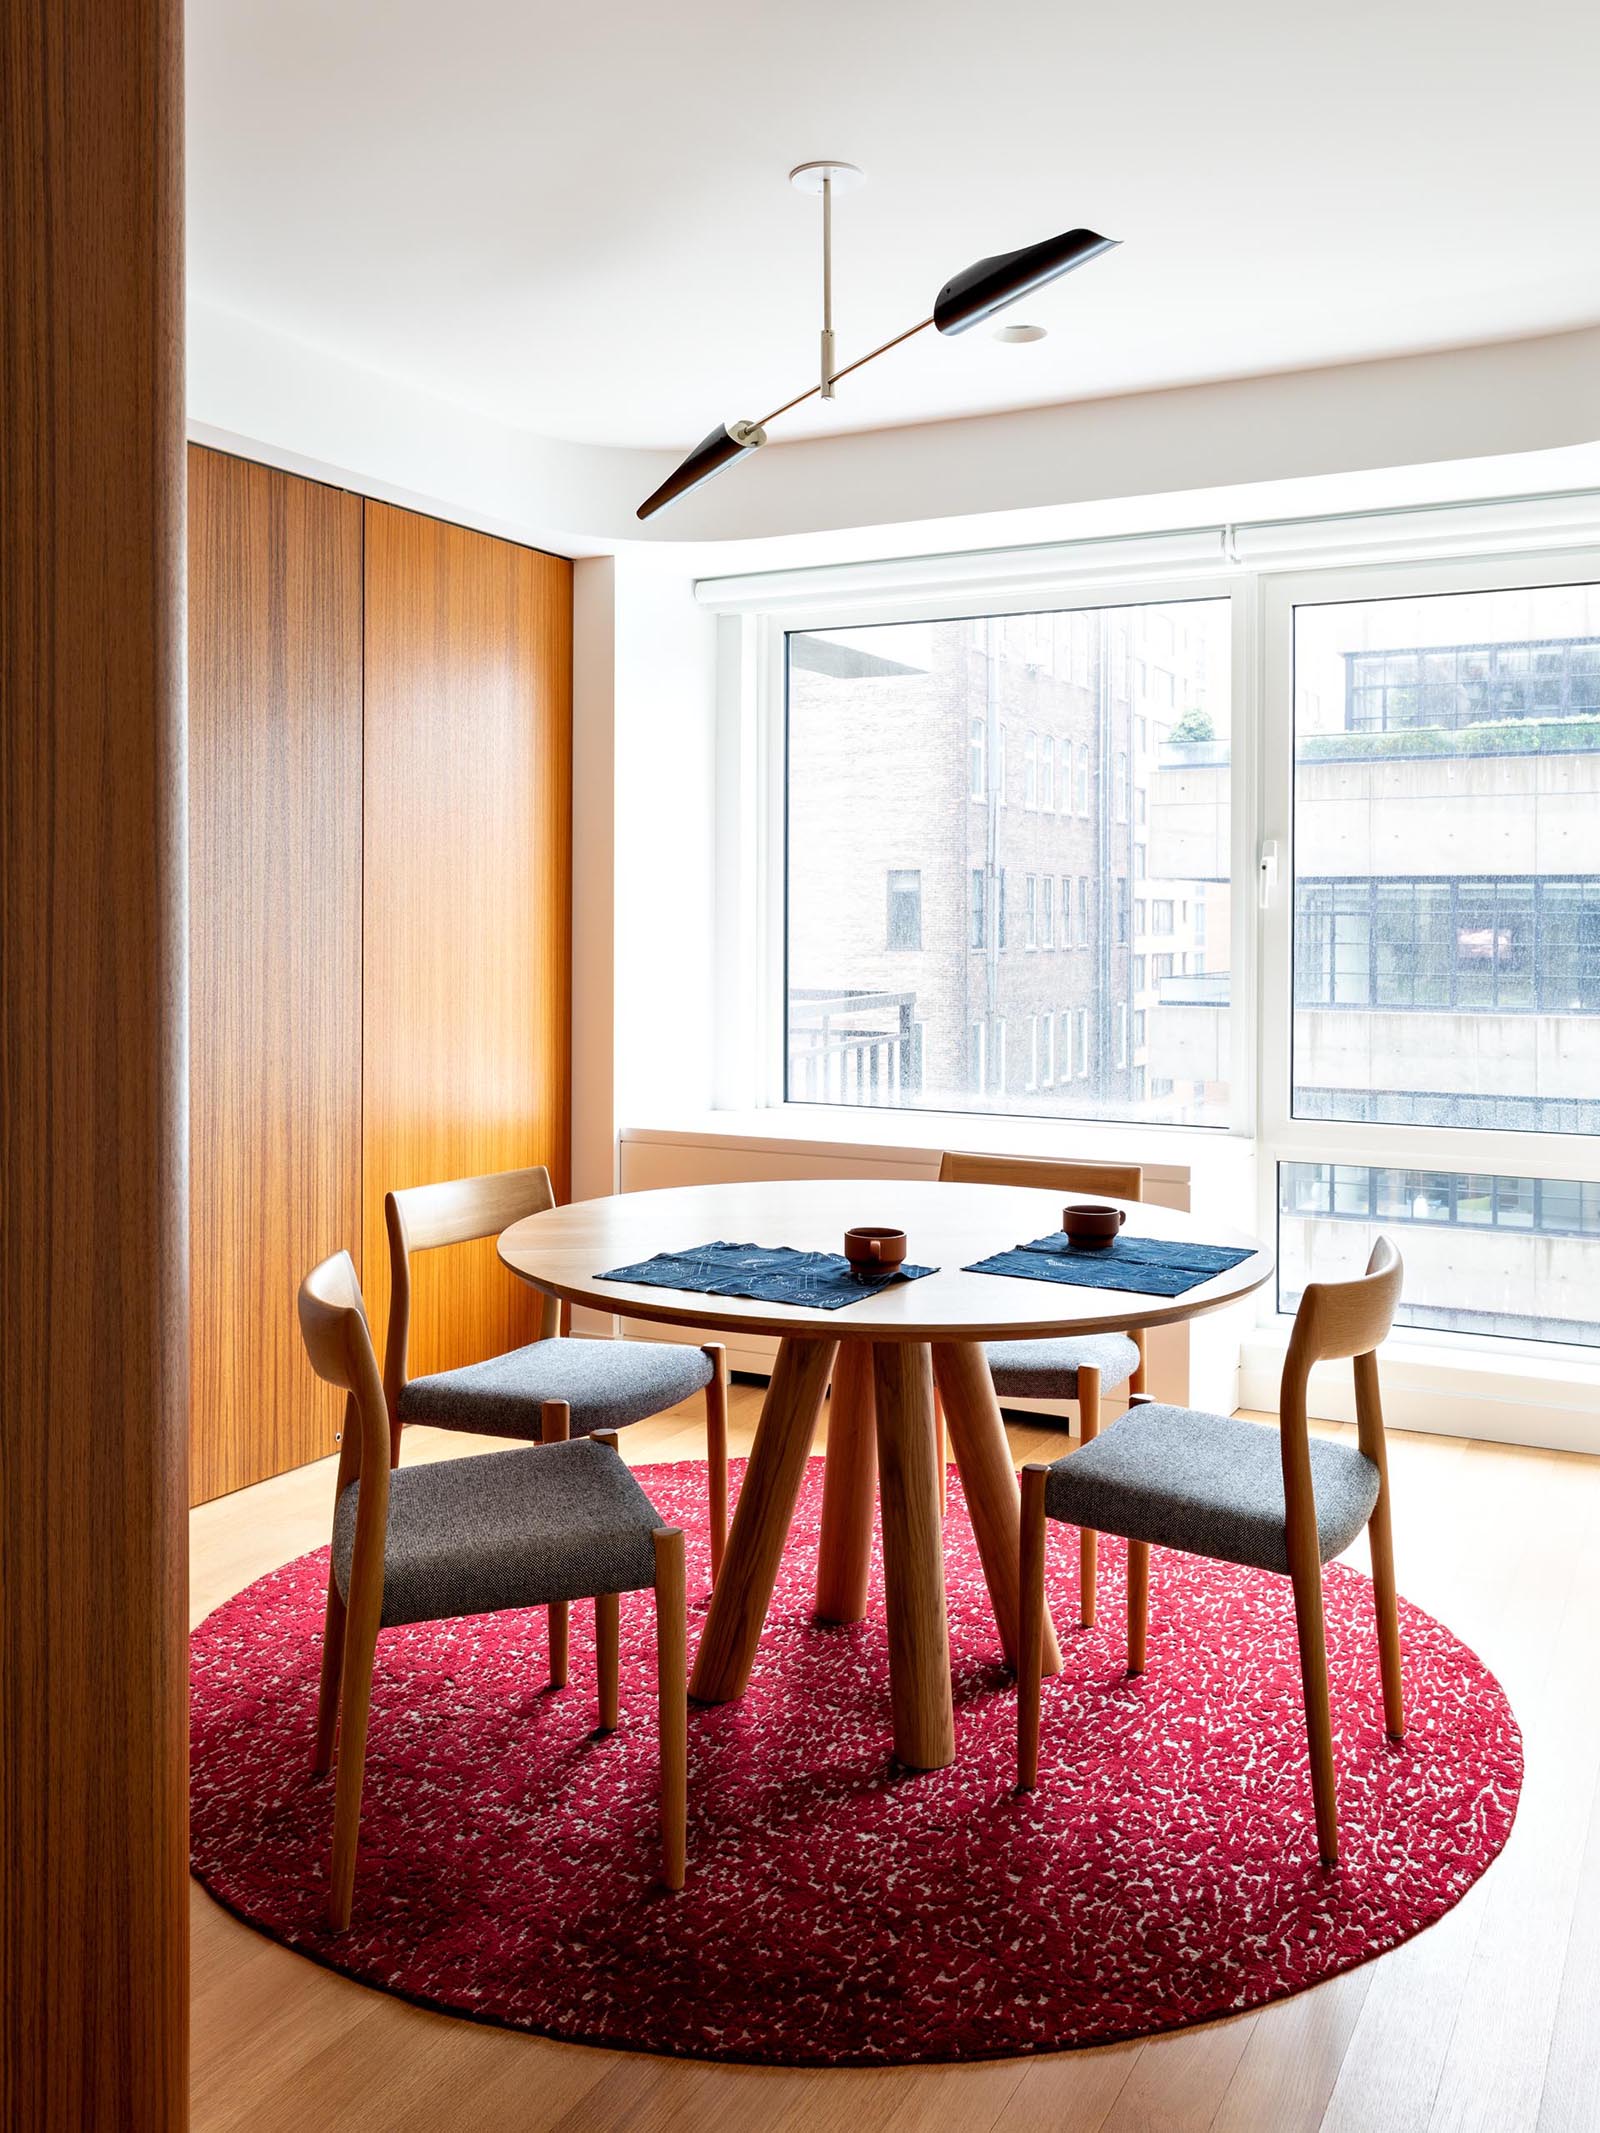 Современная столовая с красочным бордово-розовым ковром и деревянной мебелью.